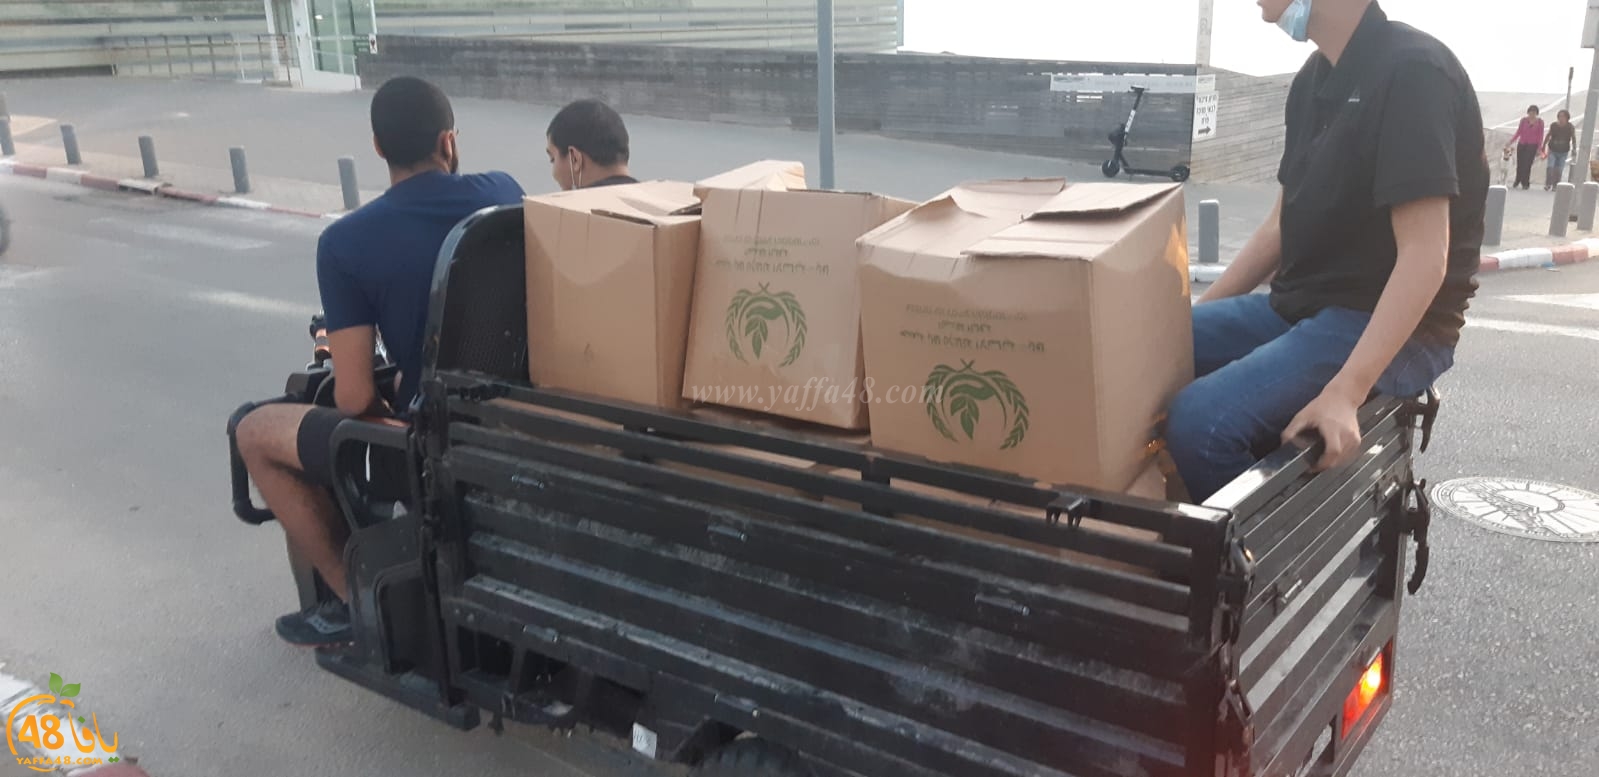  فيديو: جمعية يافا تُباشر بتوزيع الطرود الغذائية على العائلات المتعففة بيافا 